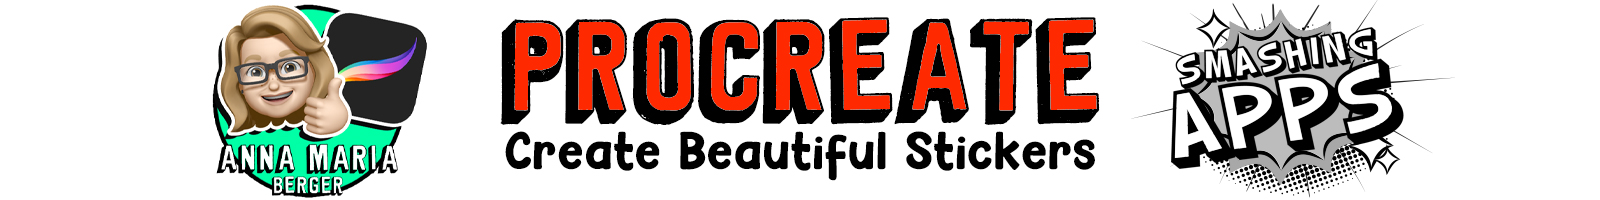 Procreate: Create beautiful stickers